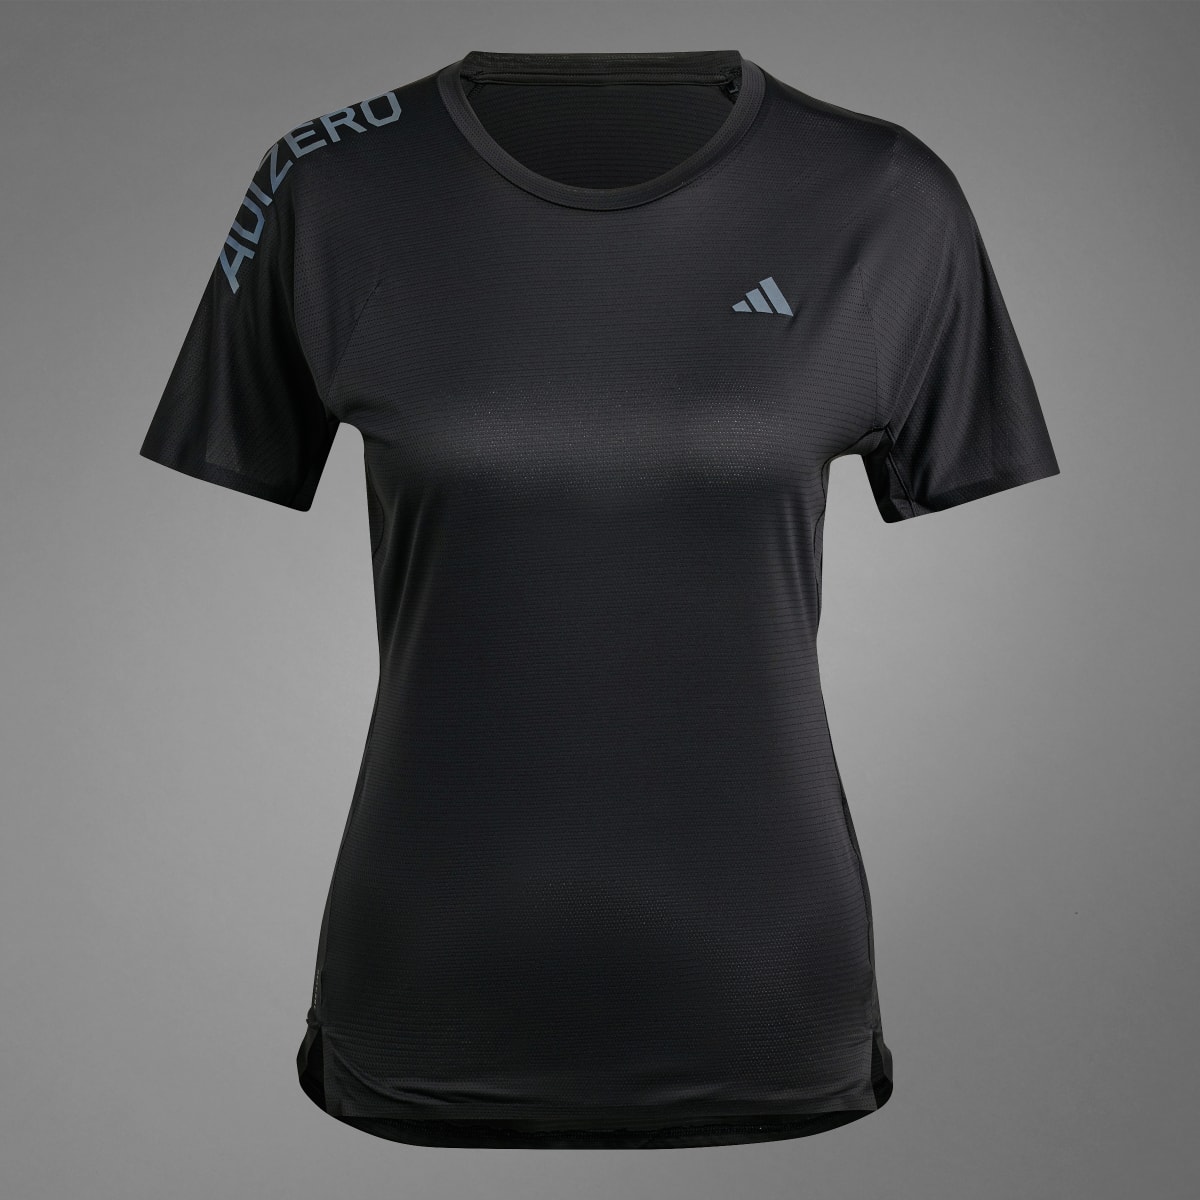 Adidas Camiseta Adizero Running. 11